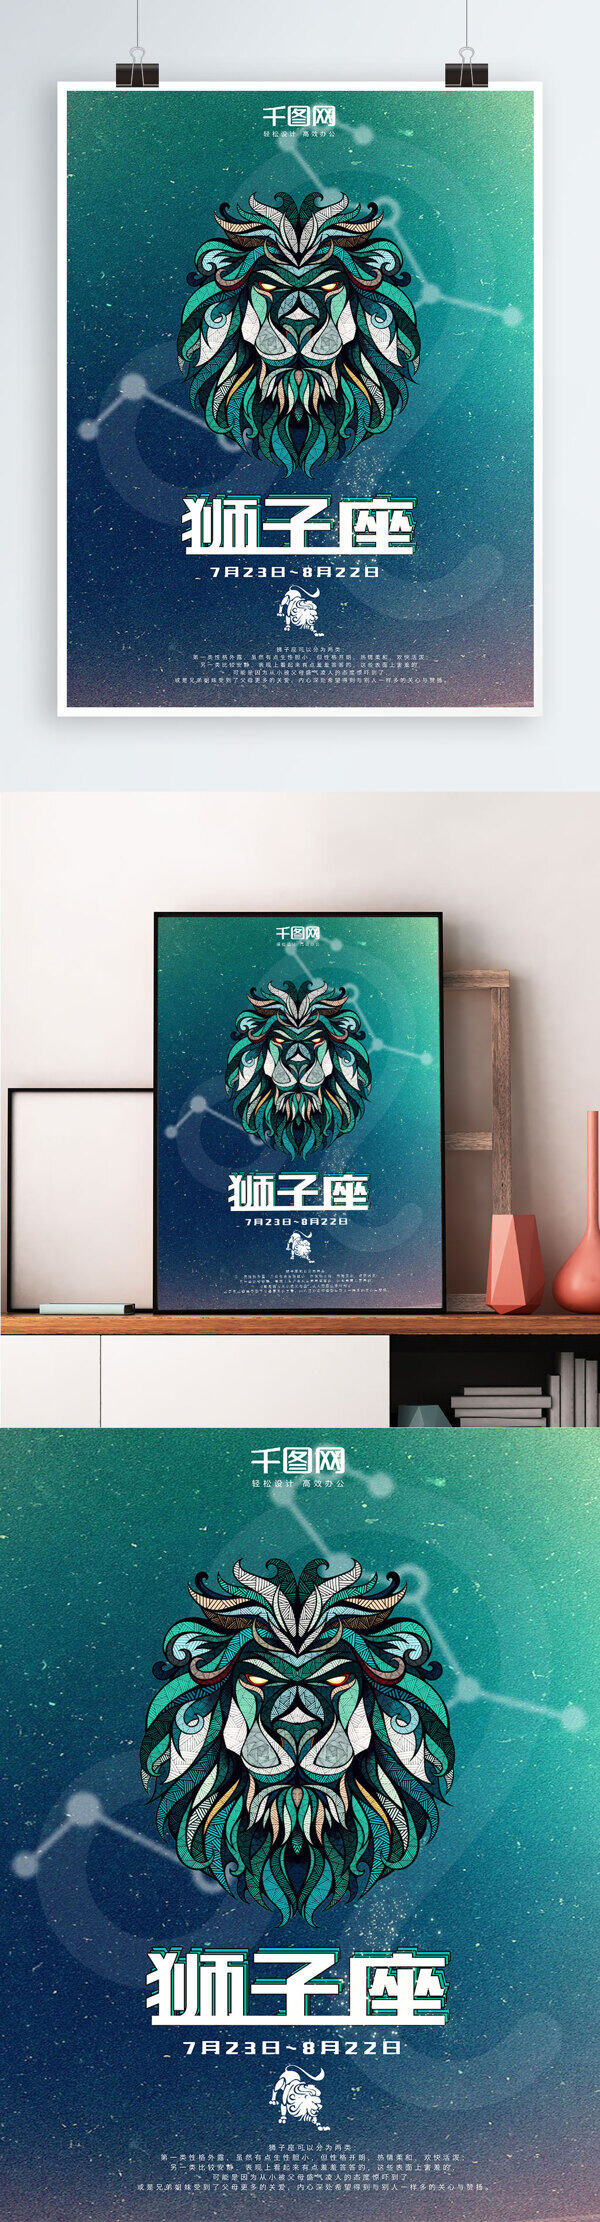 狮子座节日海报